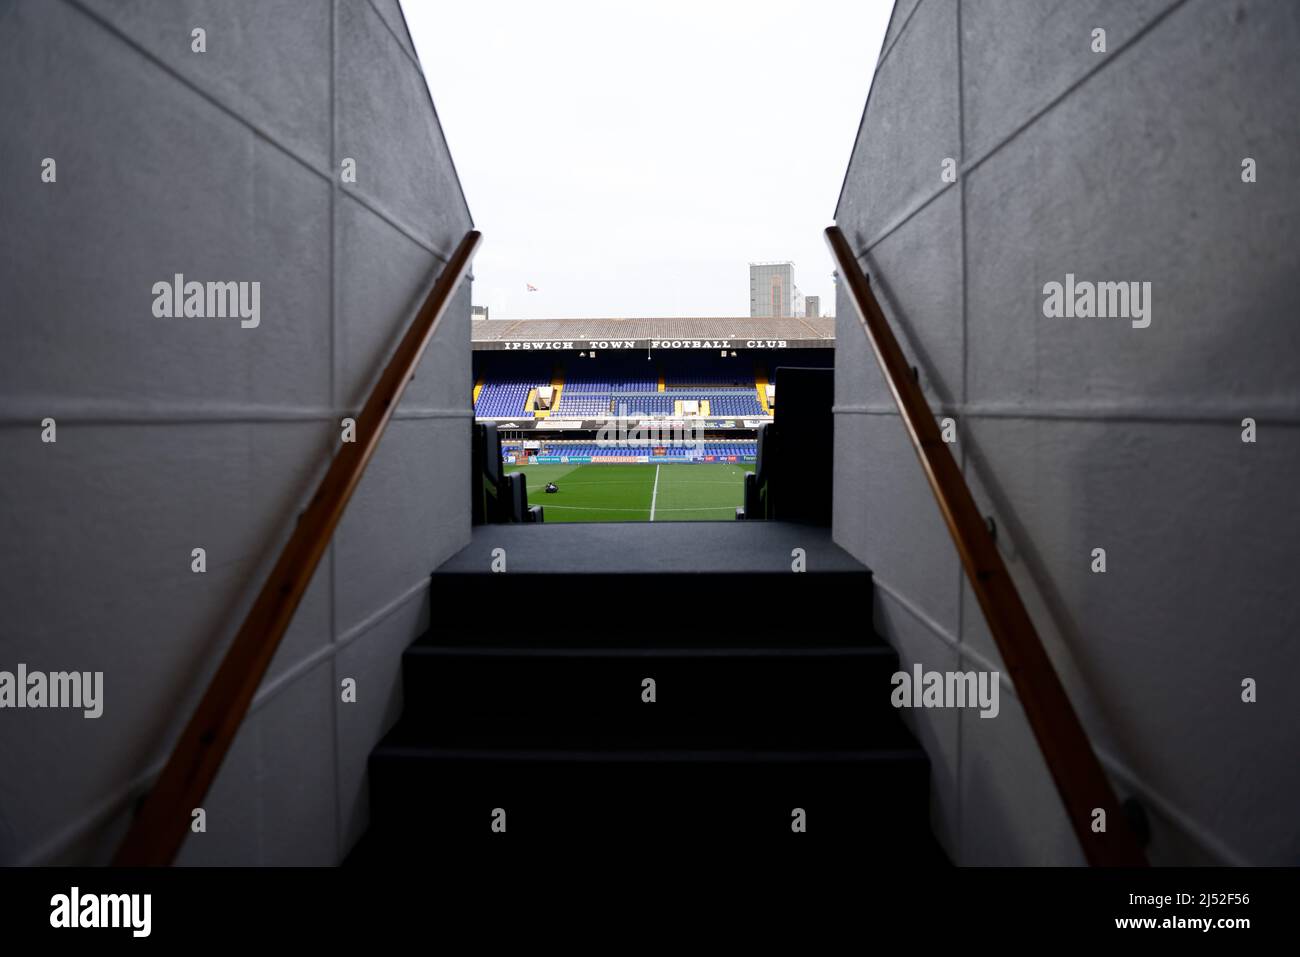 Une vue générale du stade avant le match de la Sky Bet League One à Portman Road, Ipswich. Date de la photo: Mardi 19 avril 2022. Banque D'Images